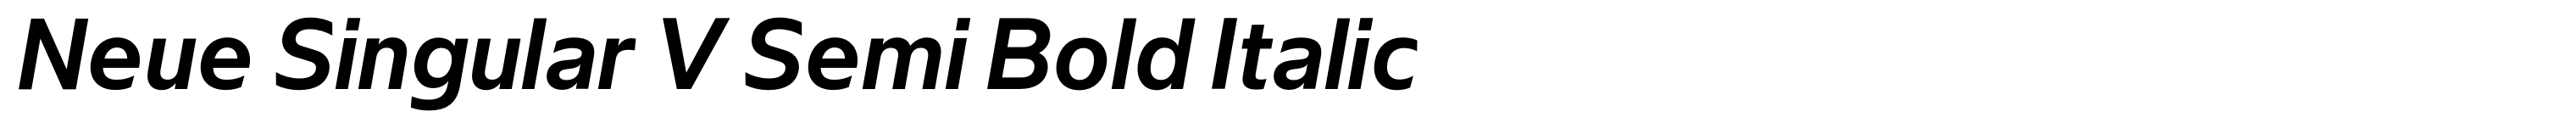 Neue Singular V Semi Bold Italic